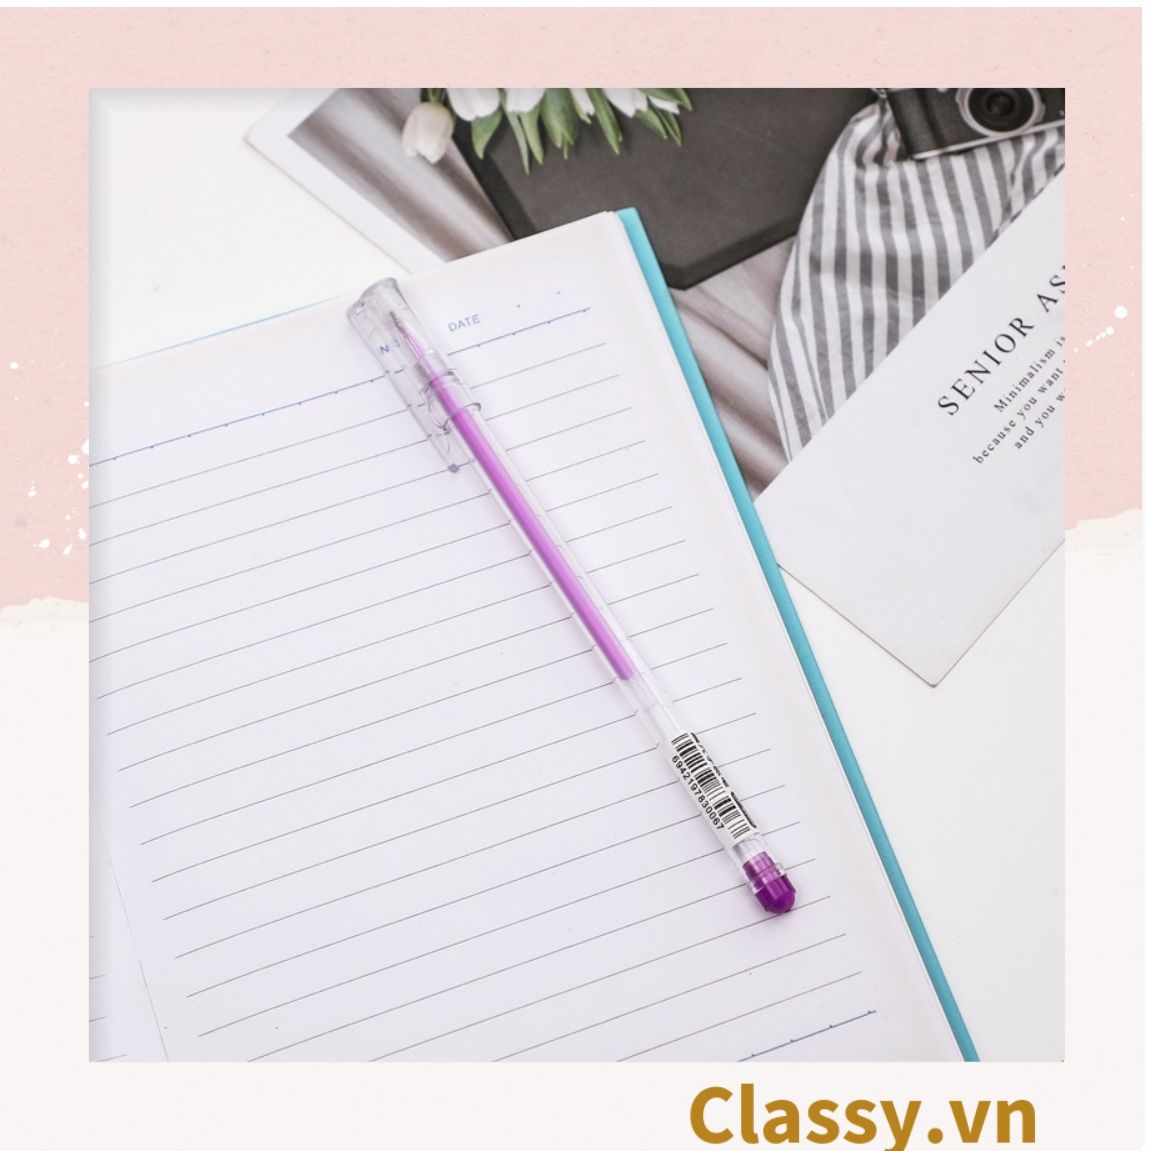  Bút gel nhũ ngòi 0.5mm nhiều màu tùy chọn cho học sinh/sinh viên; dùng viết lên sổ lưu bút, quà tặng, thiệp PK487 